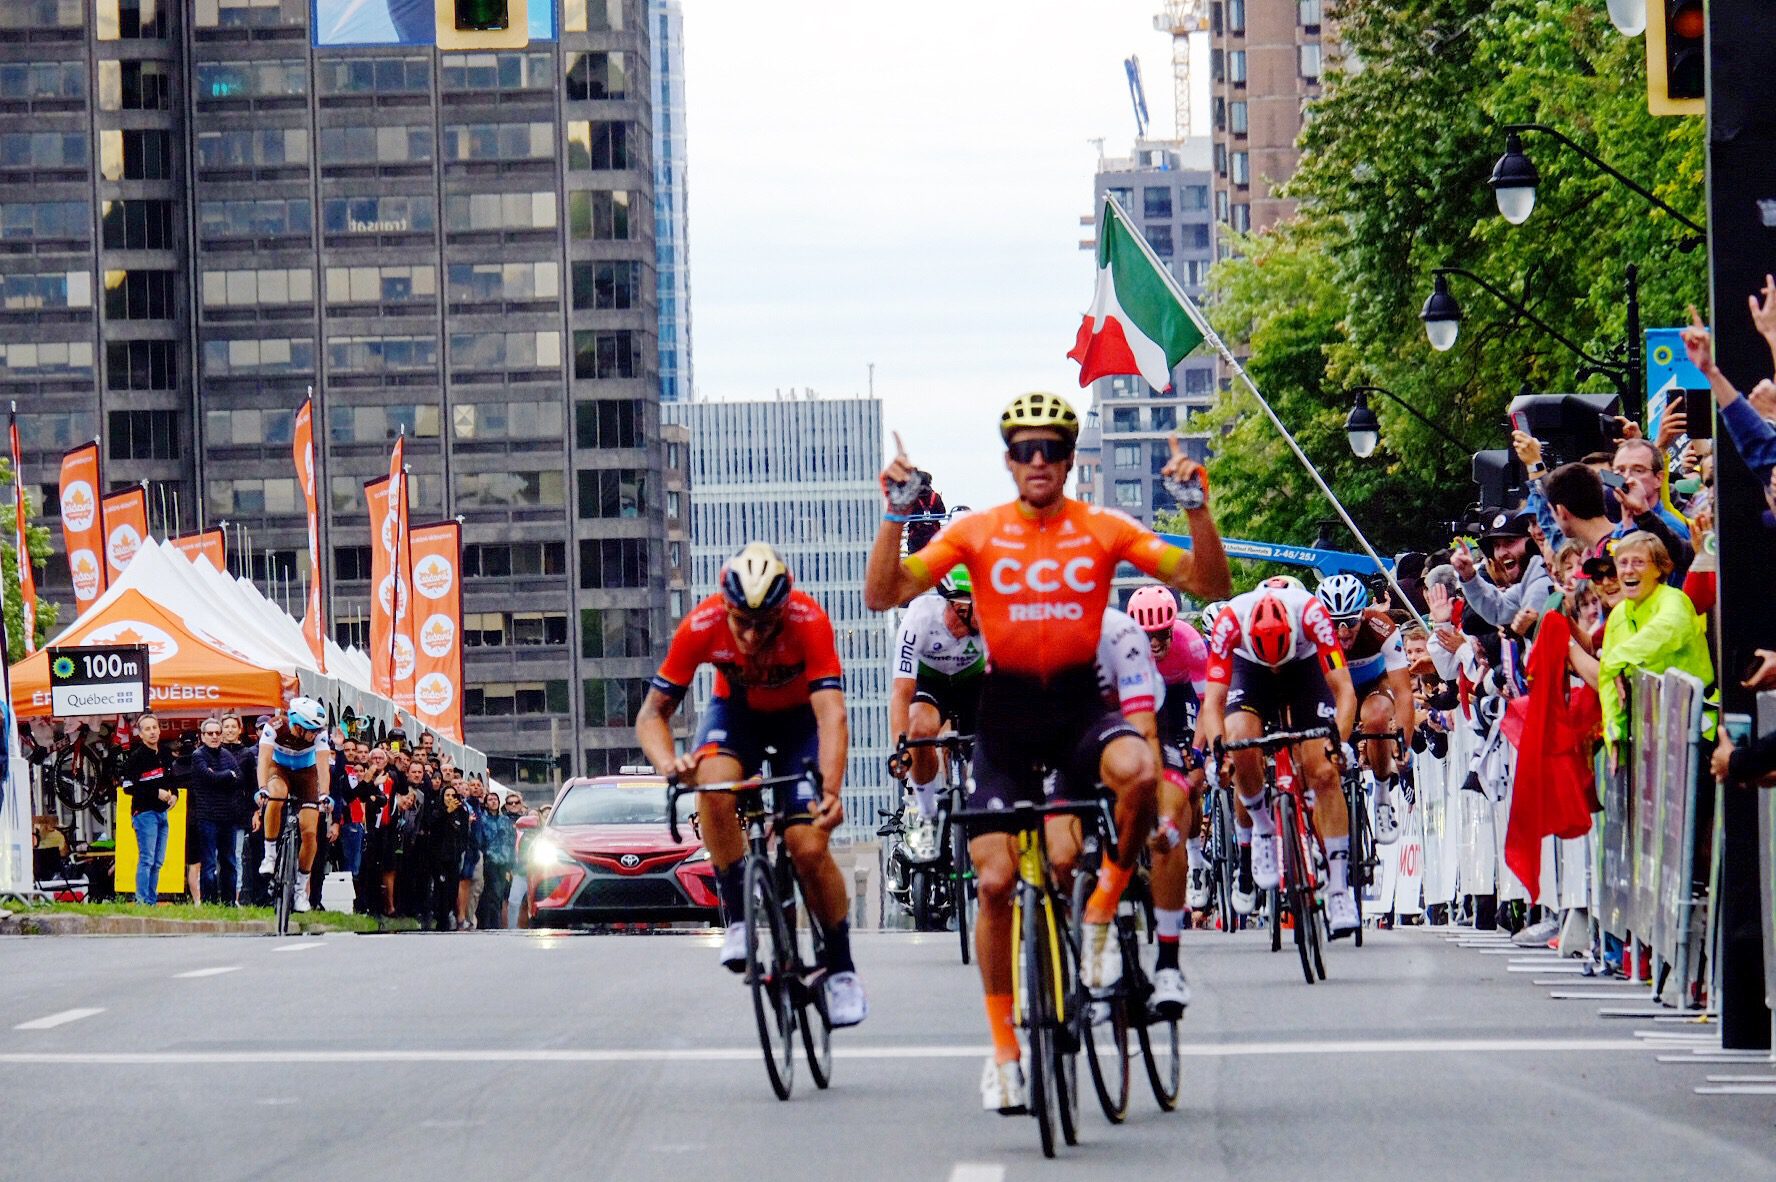 Grand Prix Cycliste de Montréal | 1.1 | 22/9 GregVanAvermaetMontreal